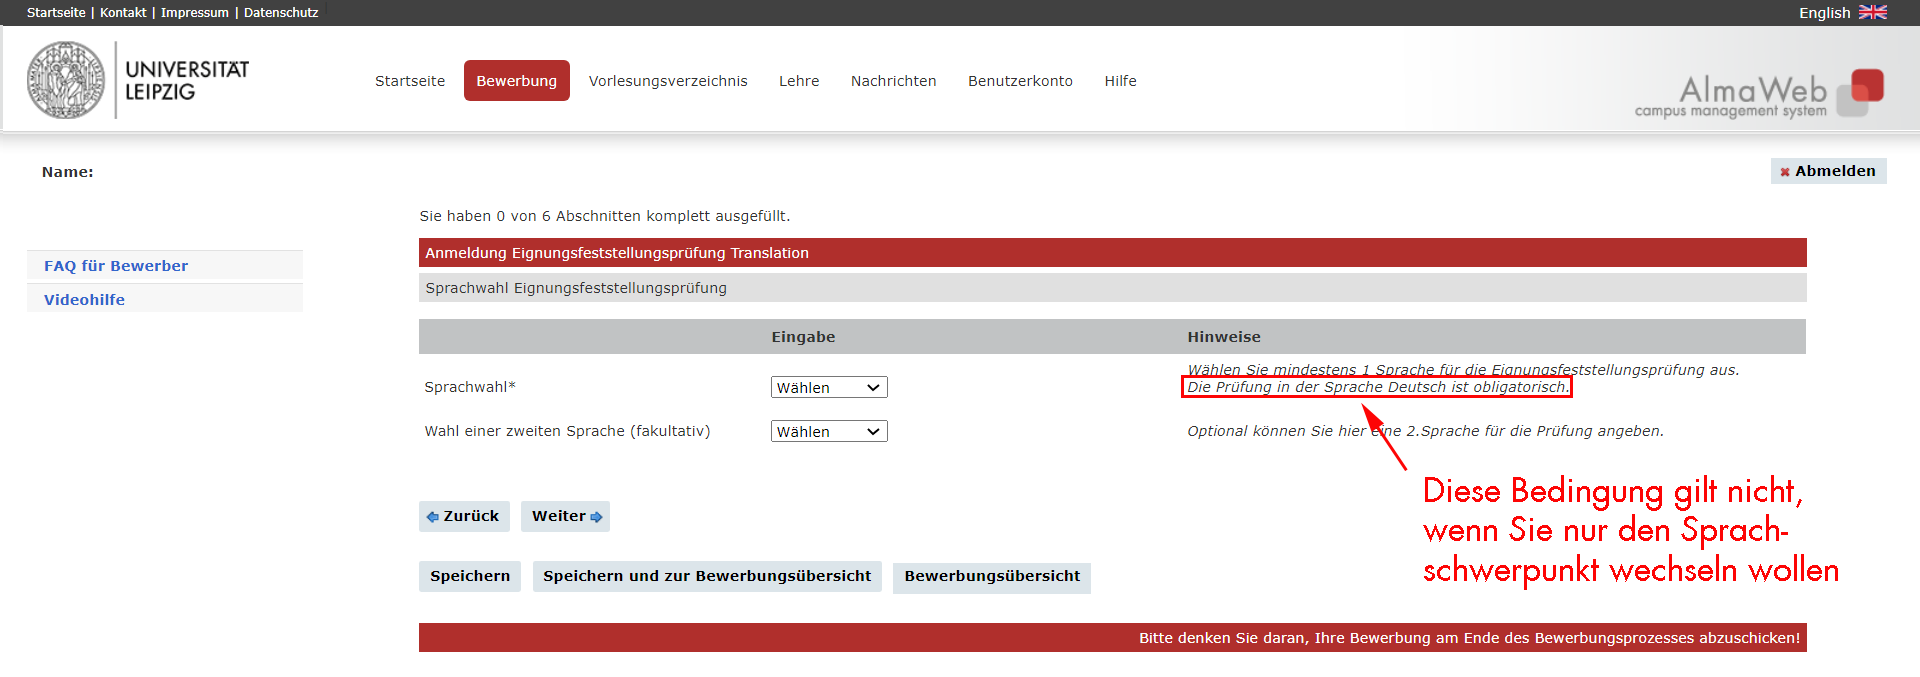 Screenshot von der Weboberfläche von AlmaWeb: Der dort hinterlegte Satz „Die Prüfung in der Sprache Deutsch ist obligatorisch“ gilt nicht für Schwerpunktwechsler